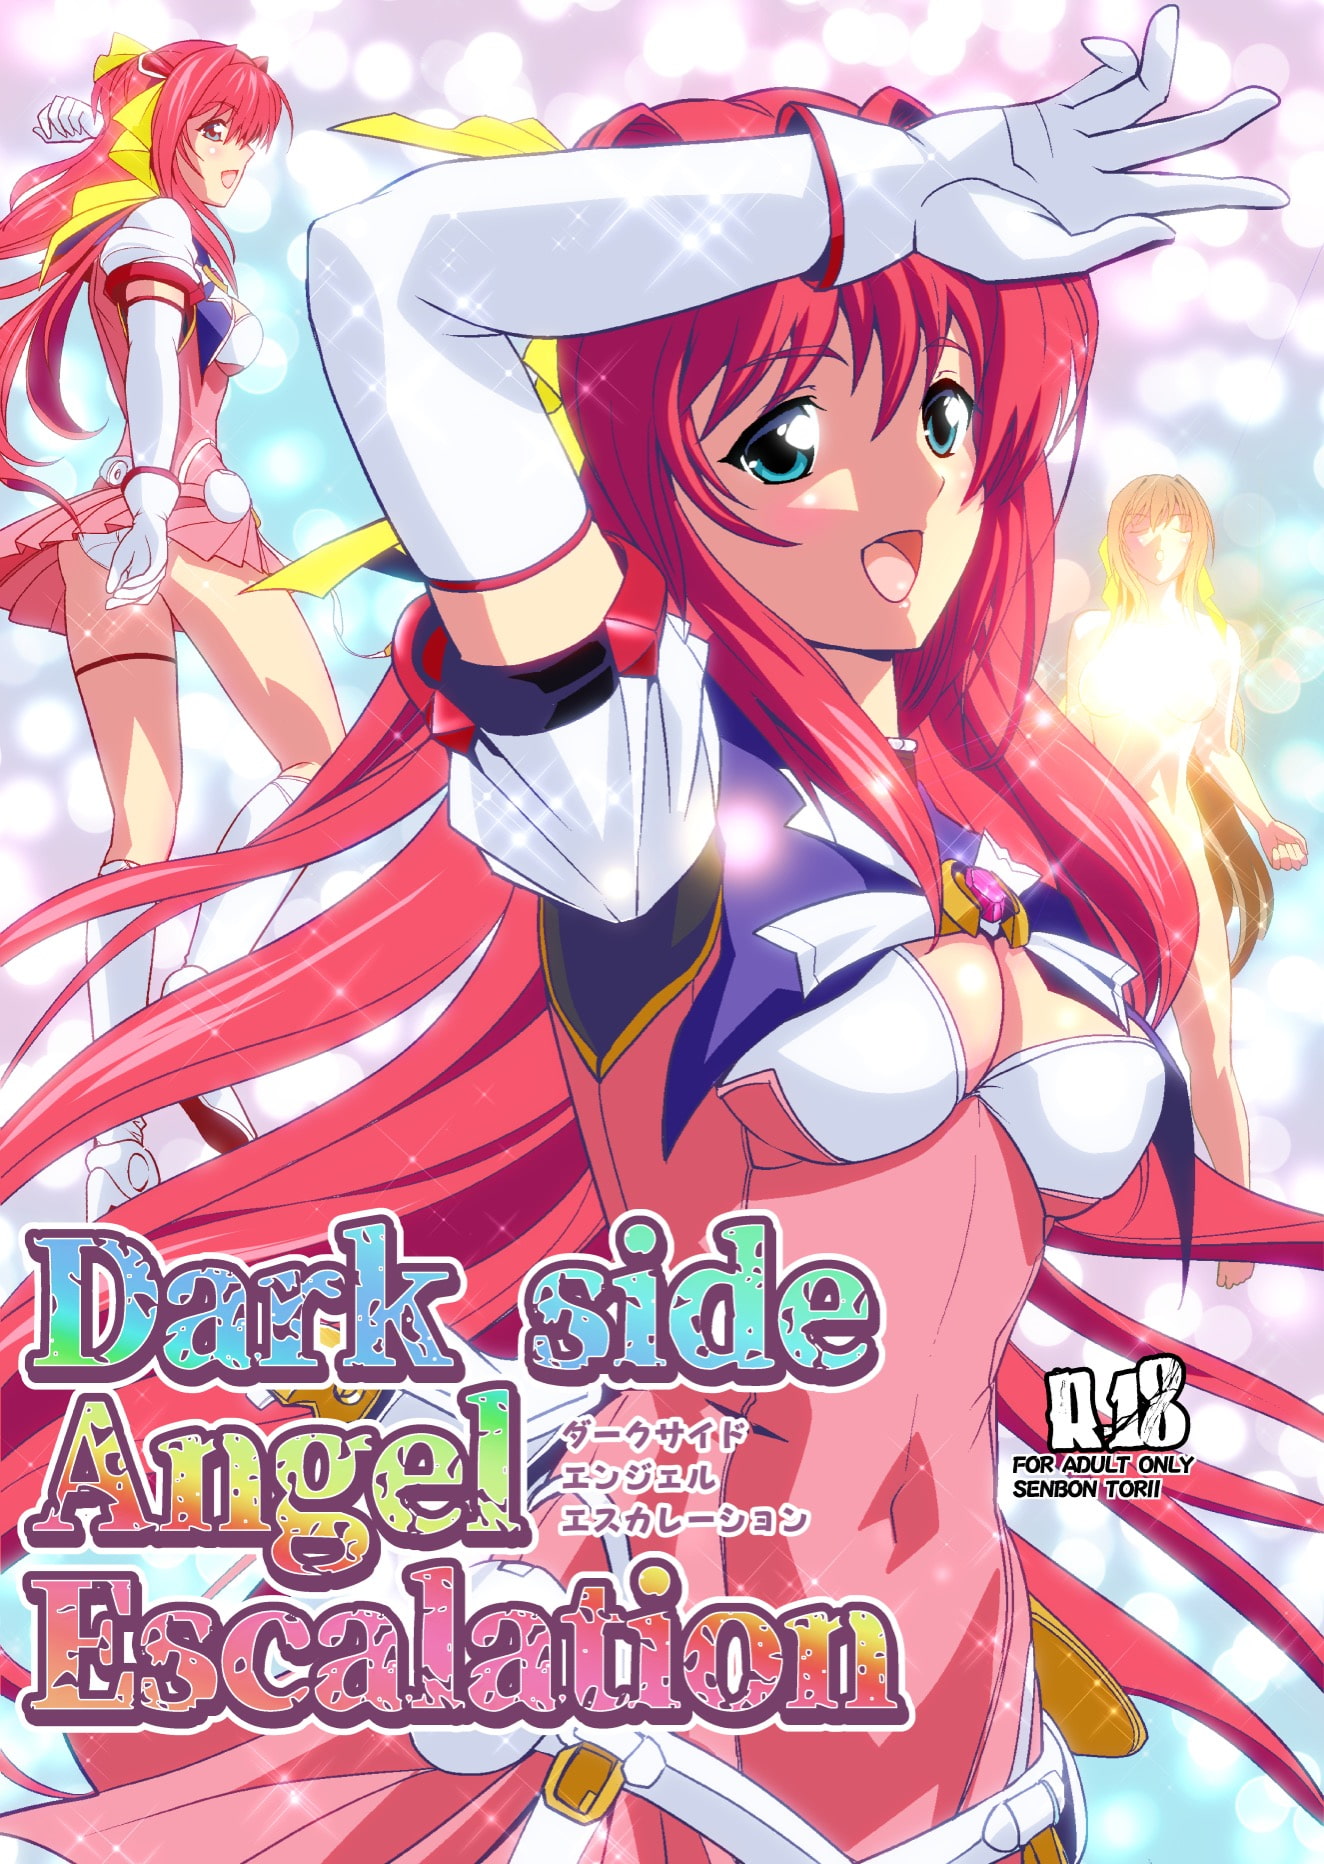 Darkside Angel Escalation